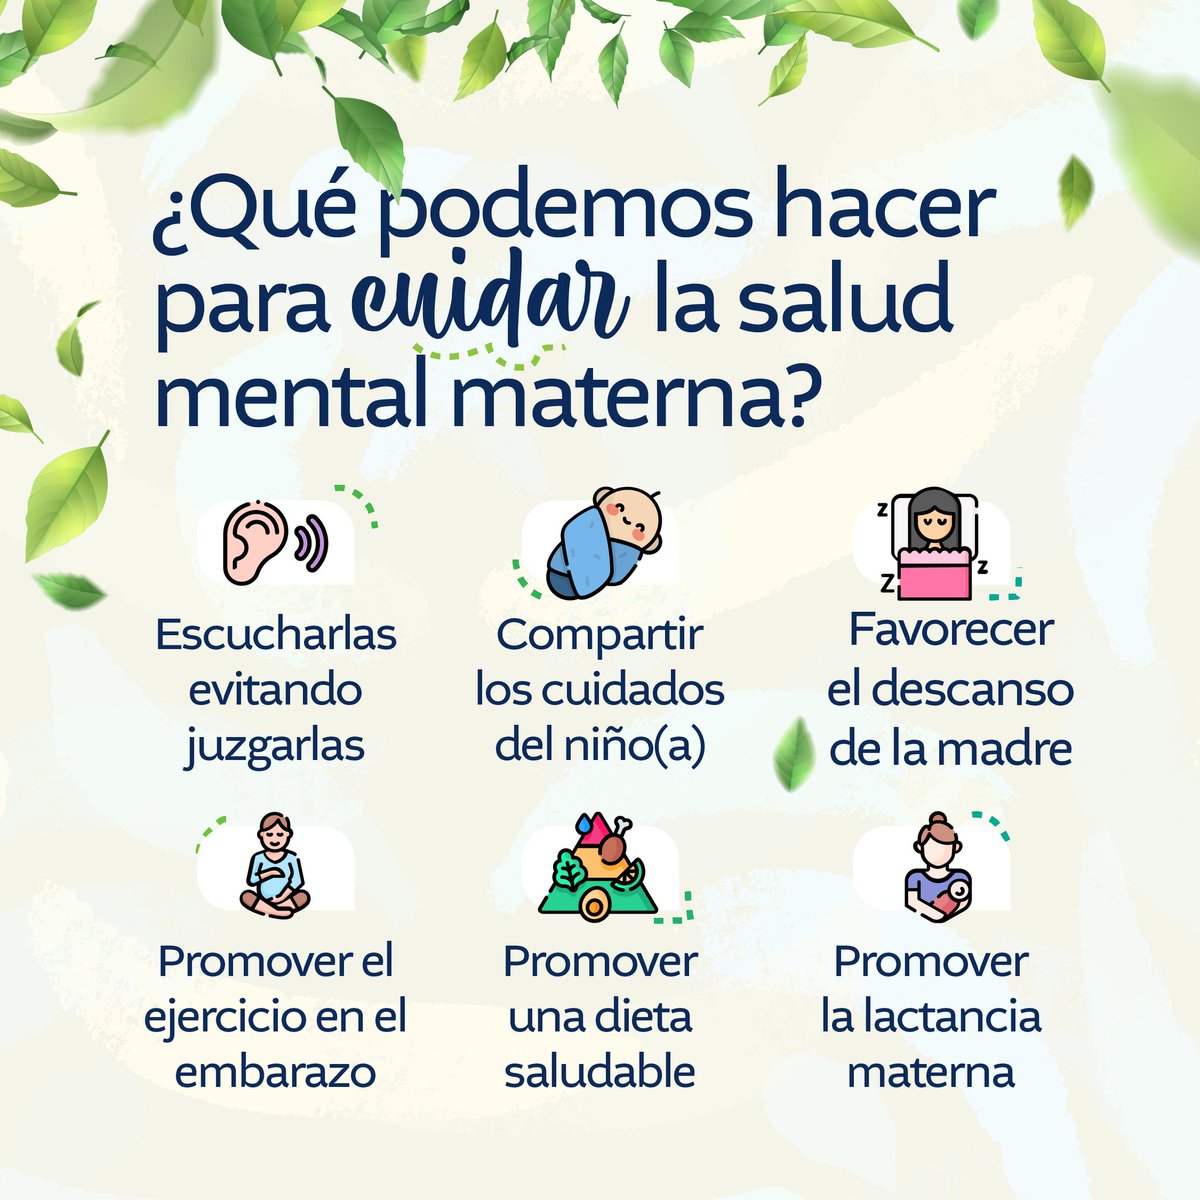 Hoy recordamos la importancia de cuidar la salud mental de las madres. Su bienestar emocional es fundamental para el desarrollo de la familia. ¡Apoyemos juntos la salud mental materna!
#GuatemalaSaleAdelante